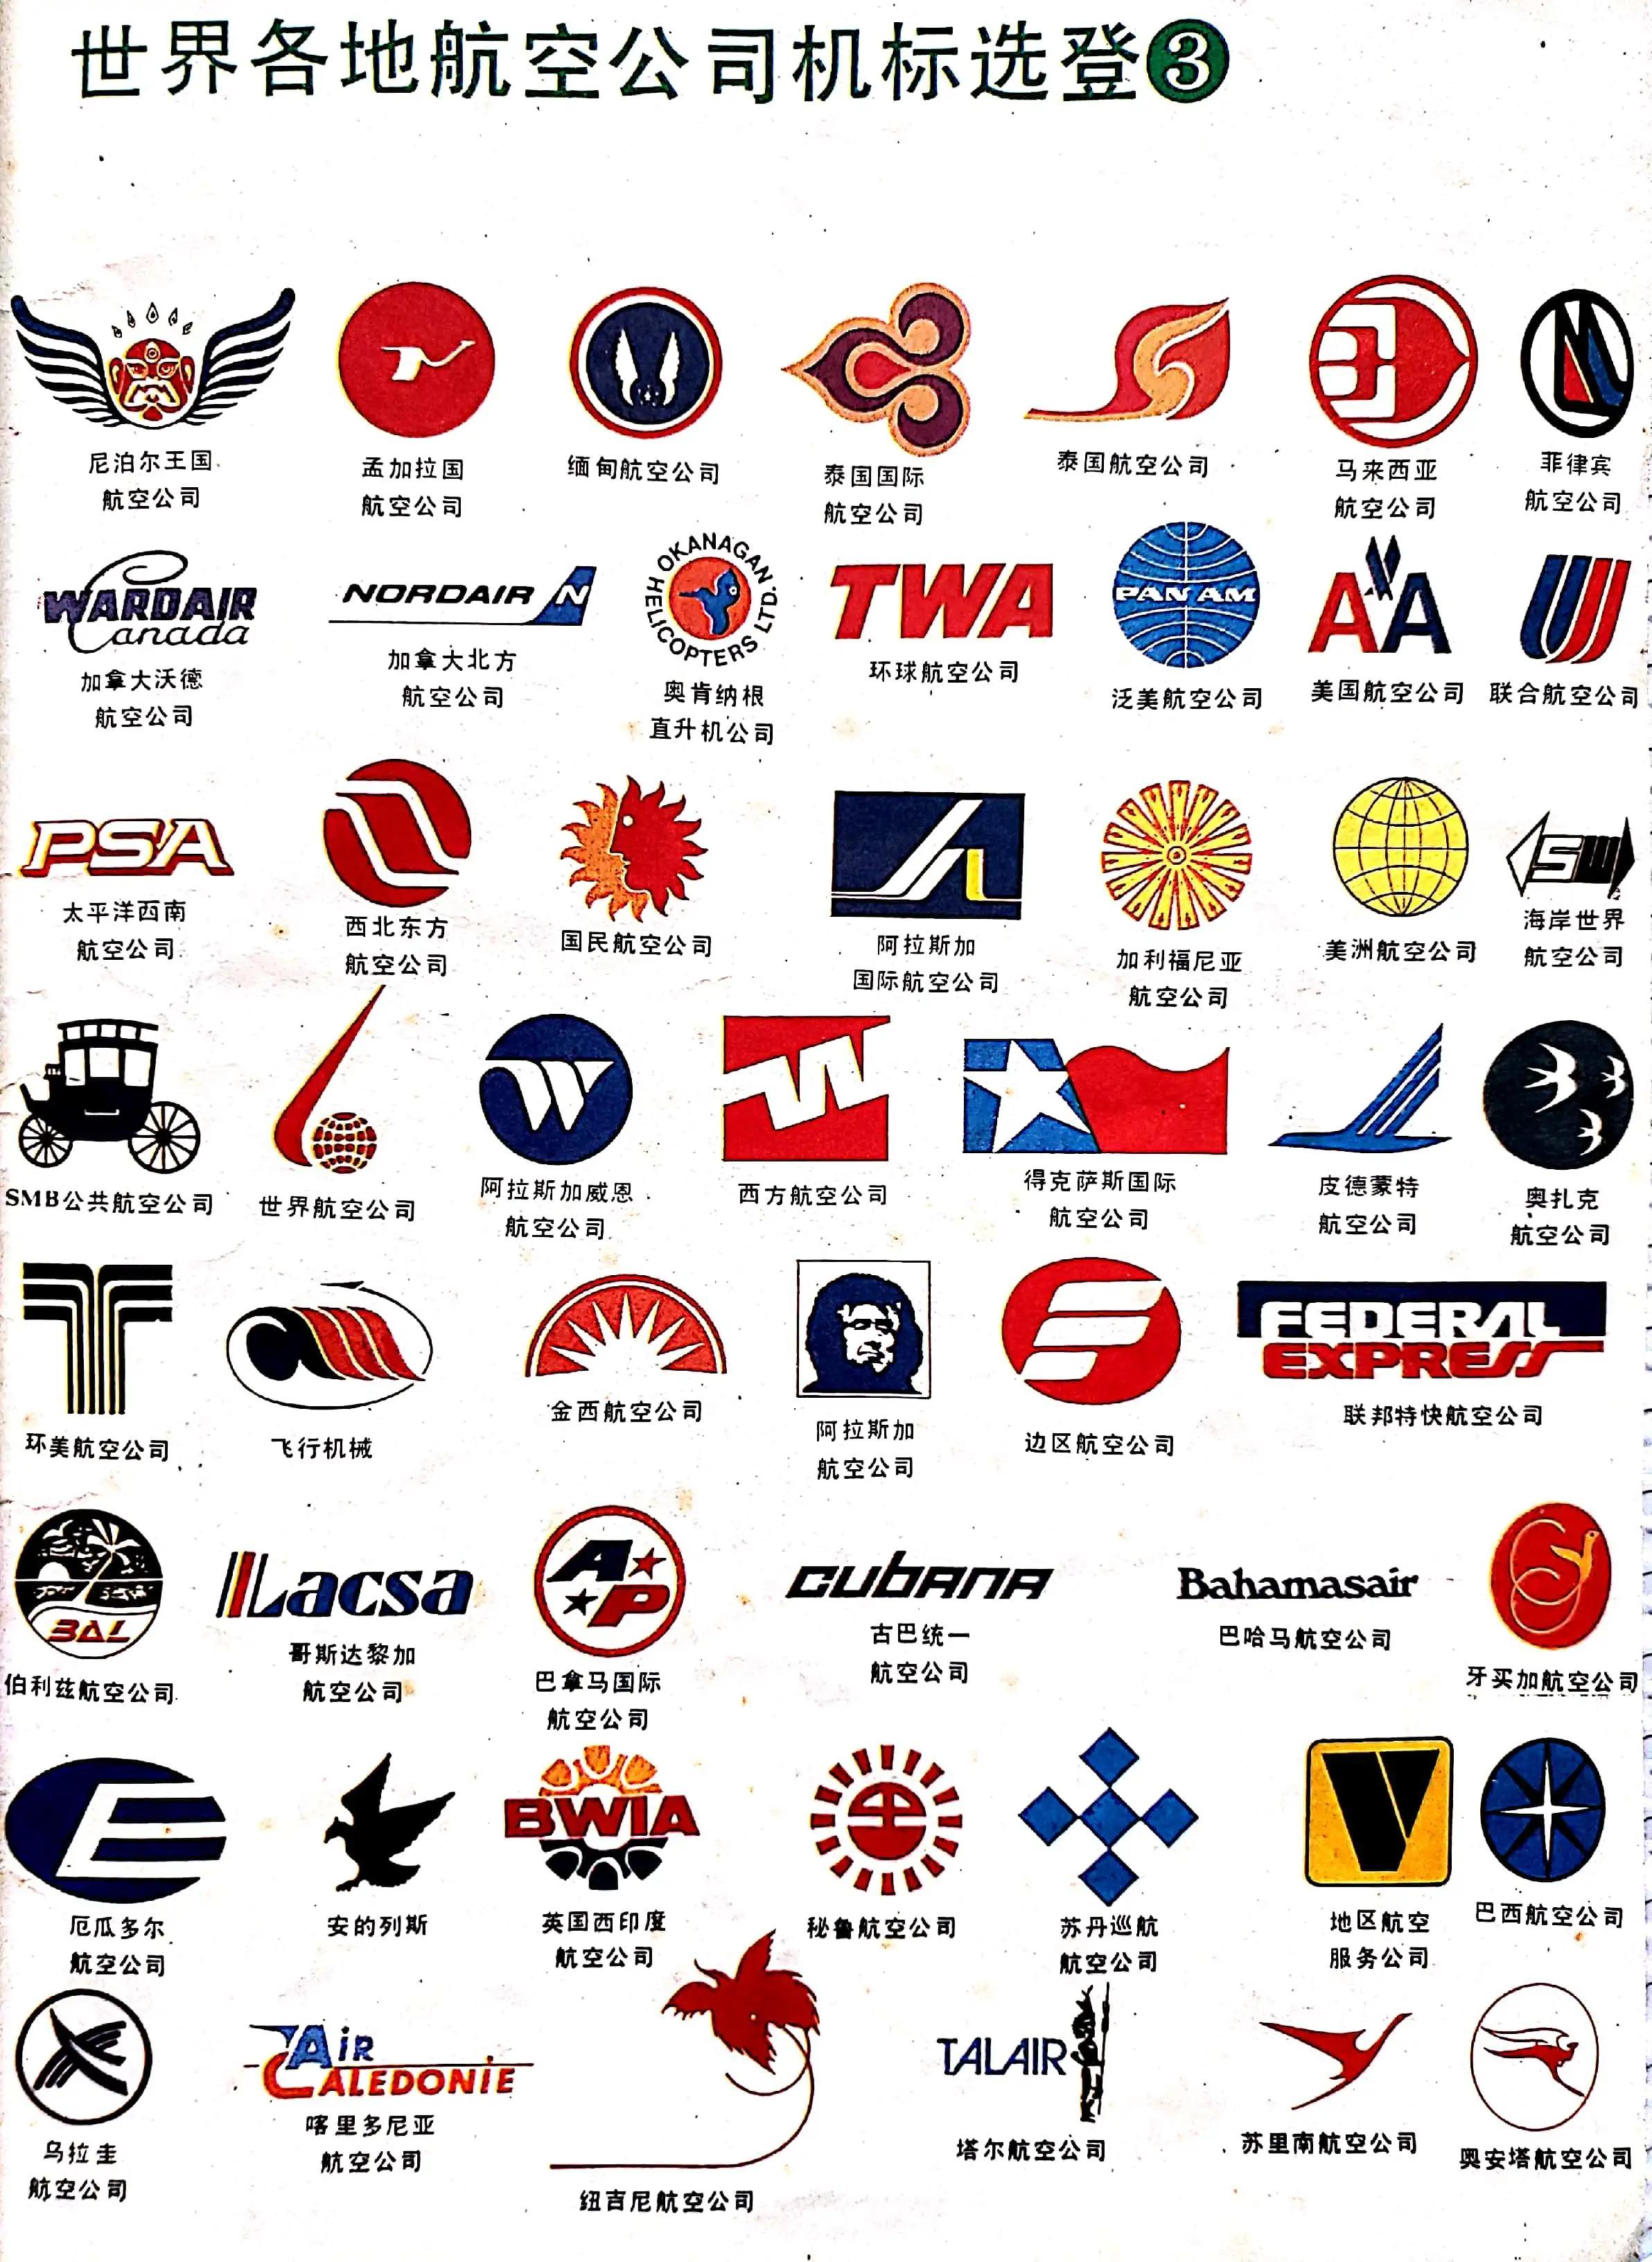 各大航空公司标志 logo图片